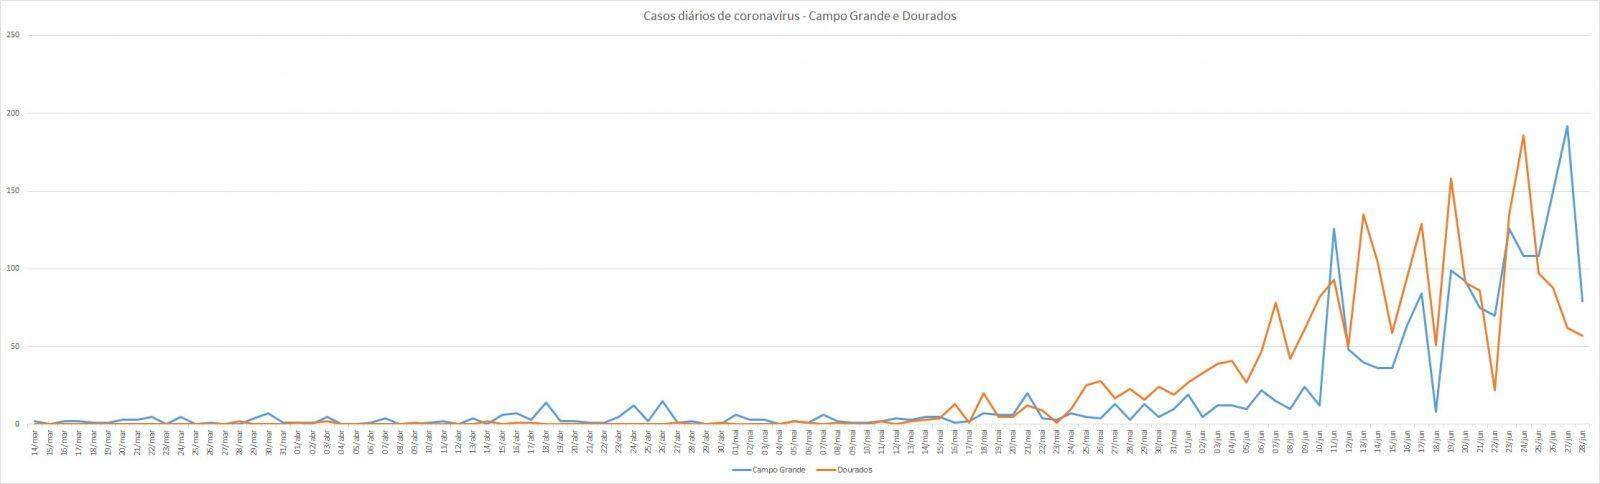 Dados divulgados pela SES indicam avanço da doença em Campo Grande, que vem figurando entre as piores capitais do país em isolamento social